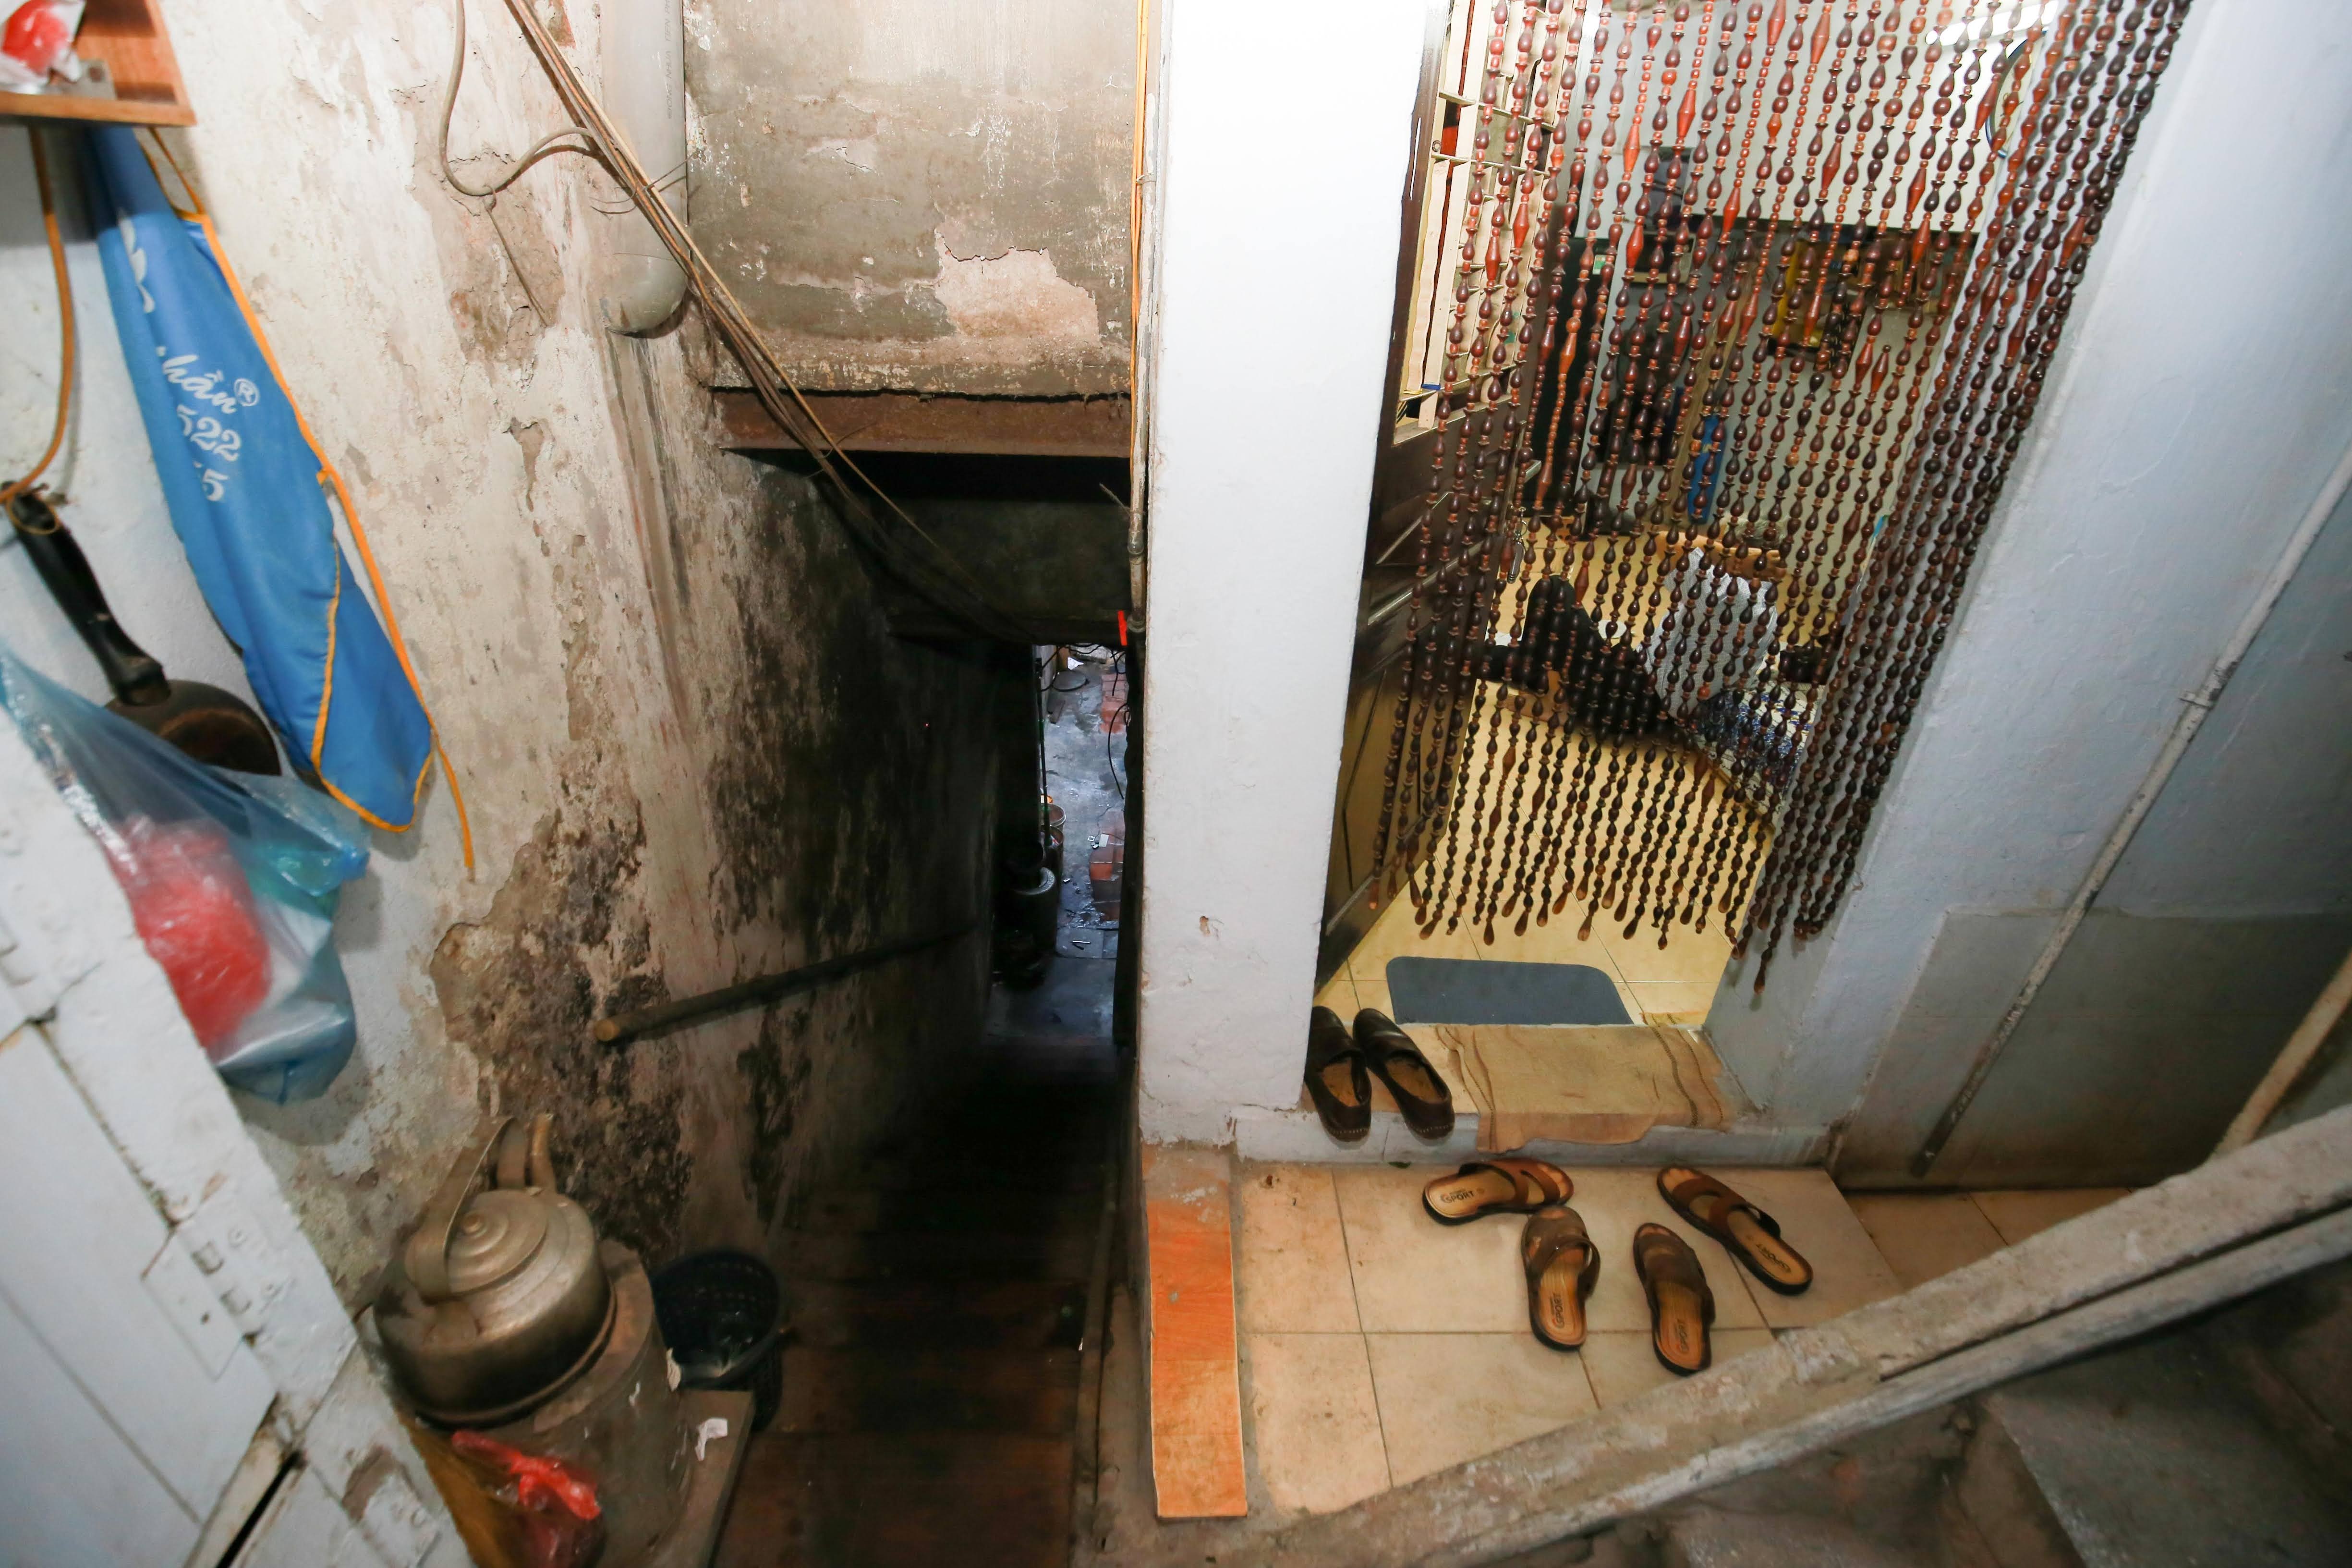 Một đêm trong nhà đất vàng 16m2 ở Hà Nội: 70 người chung một nhà vệ sinh - 9